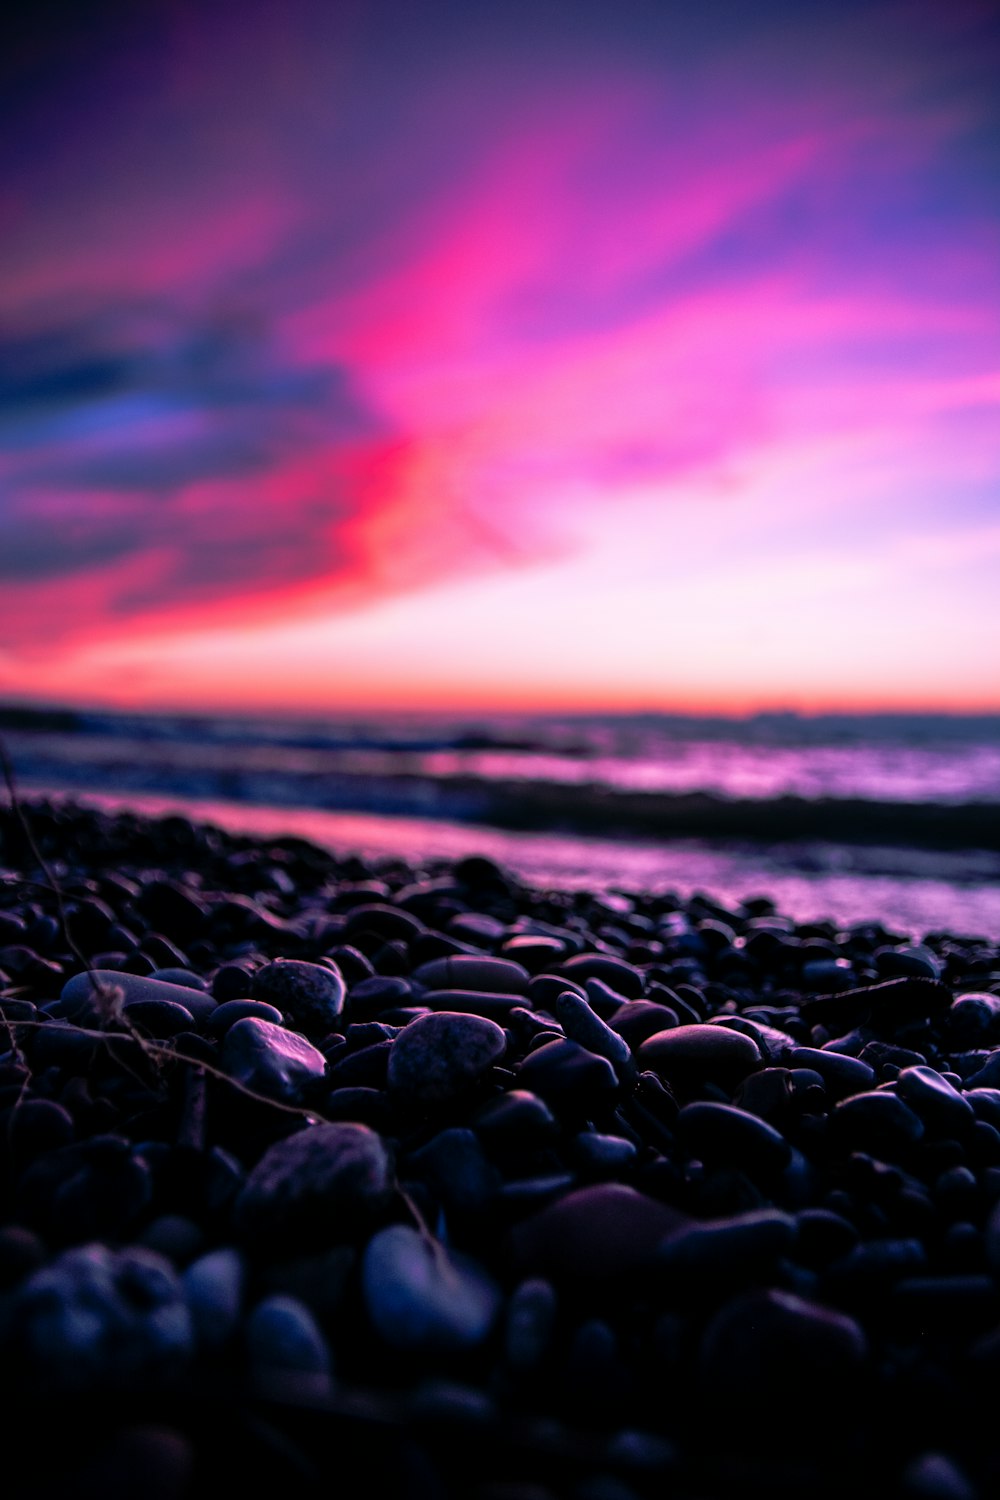 형형색색의 하늘 아래 바위와 물이 있는 해변